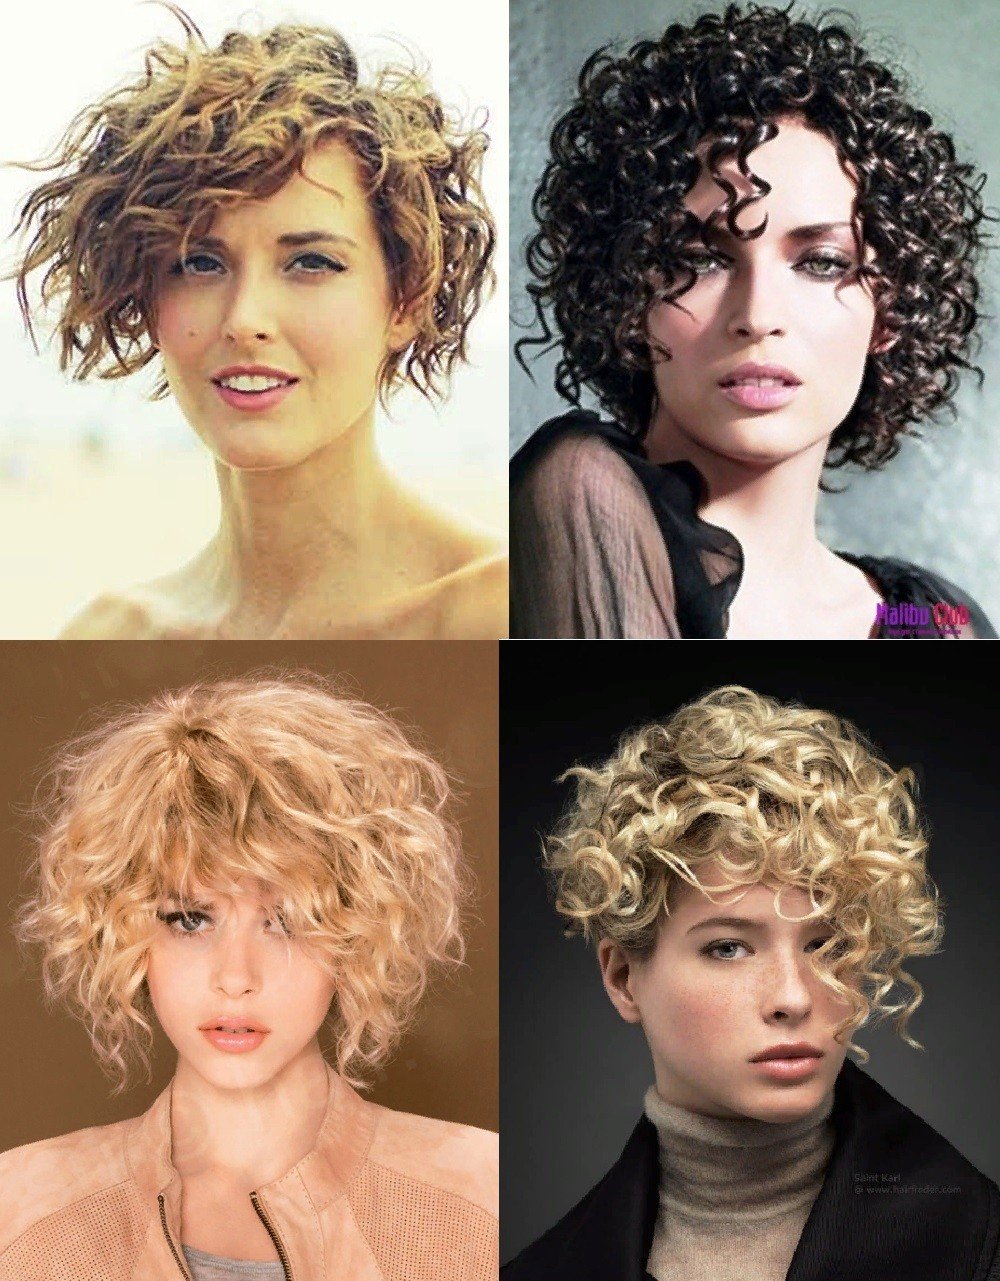 Биохимическая завивка волос фото до и после на средние волосы с челкой женские